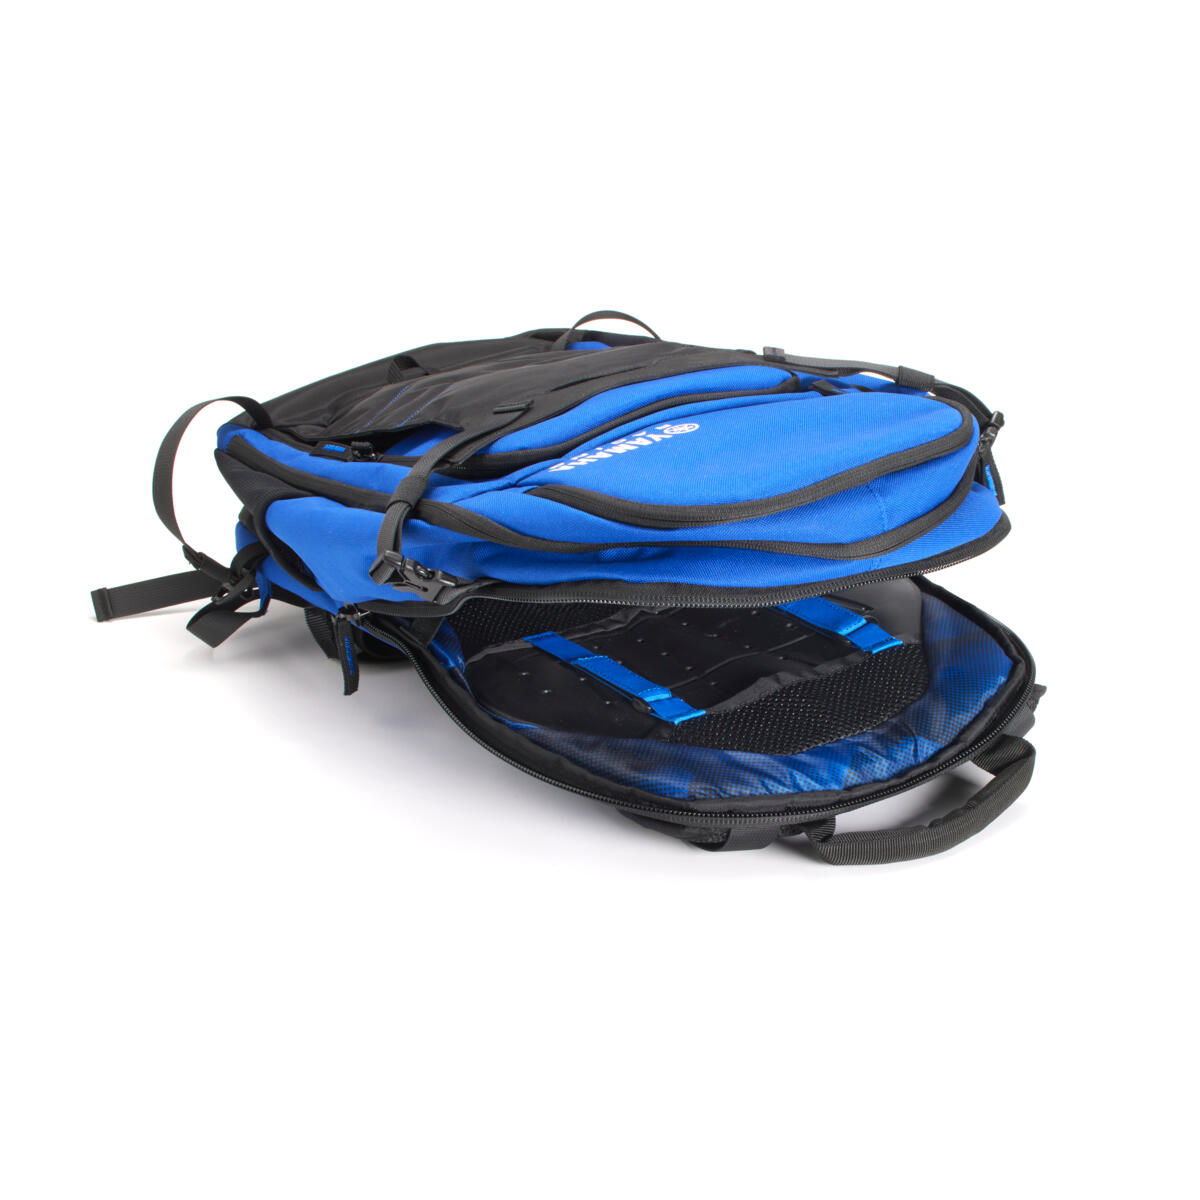 Mit seinem geräumigen Volumen von 20 Litern ist der Yamaha Adventure Backpack ein unverzichtbares Zubehör für längere Bergtouren oder Trails. Sein ergonomisches Design umfasst einen gepolsterten Hüftgurt sowie einstellbare Brust- und Taillenriemen für eine perfekte Passform und hohen Tragekomfort. Der integrierte, CE-geprüfte Rückenprotektor bietet zusätzliche Sicherheit. 

Mehrere Innenfächer bieten reichlich Stauraum für Snacks, Getränke und mehr und ein mittig angeordnetes, gepolstertes Batteriefach ermöglicht auch längere Fahrten.